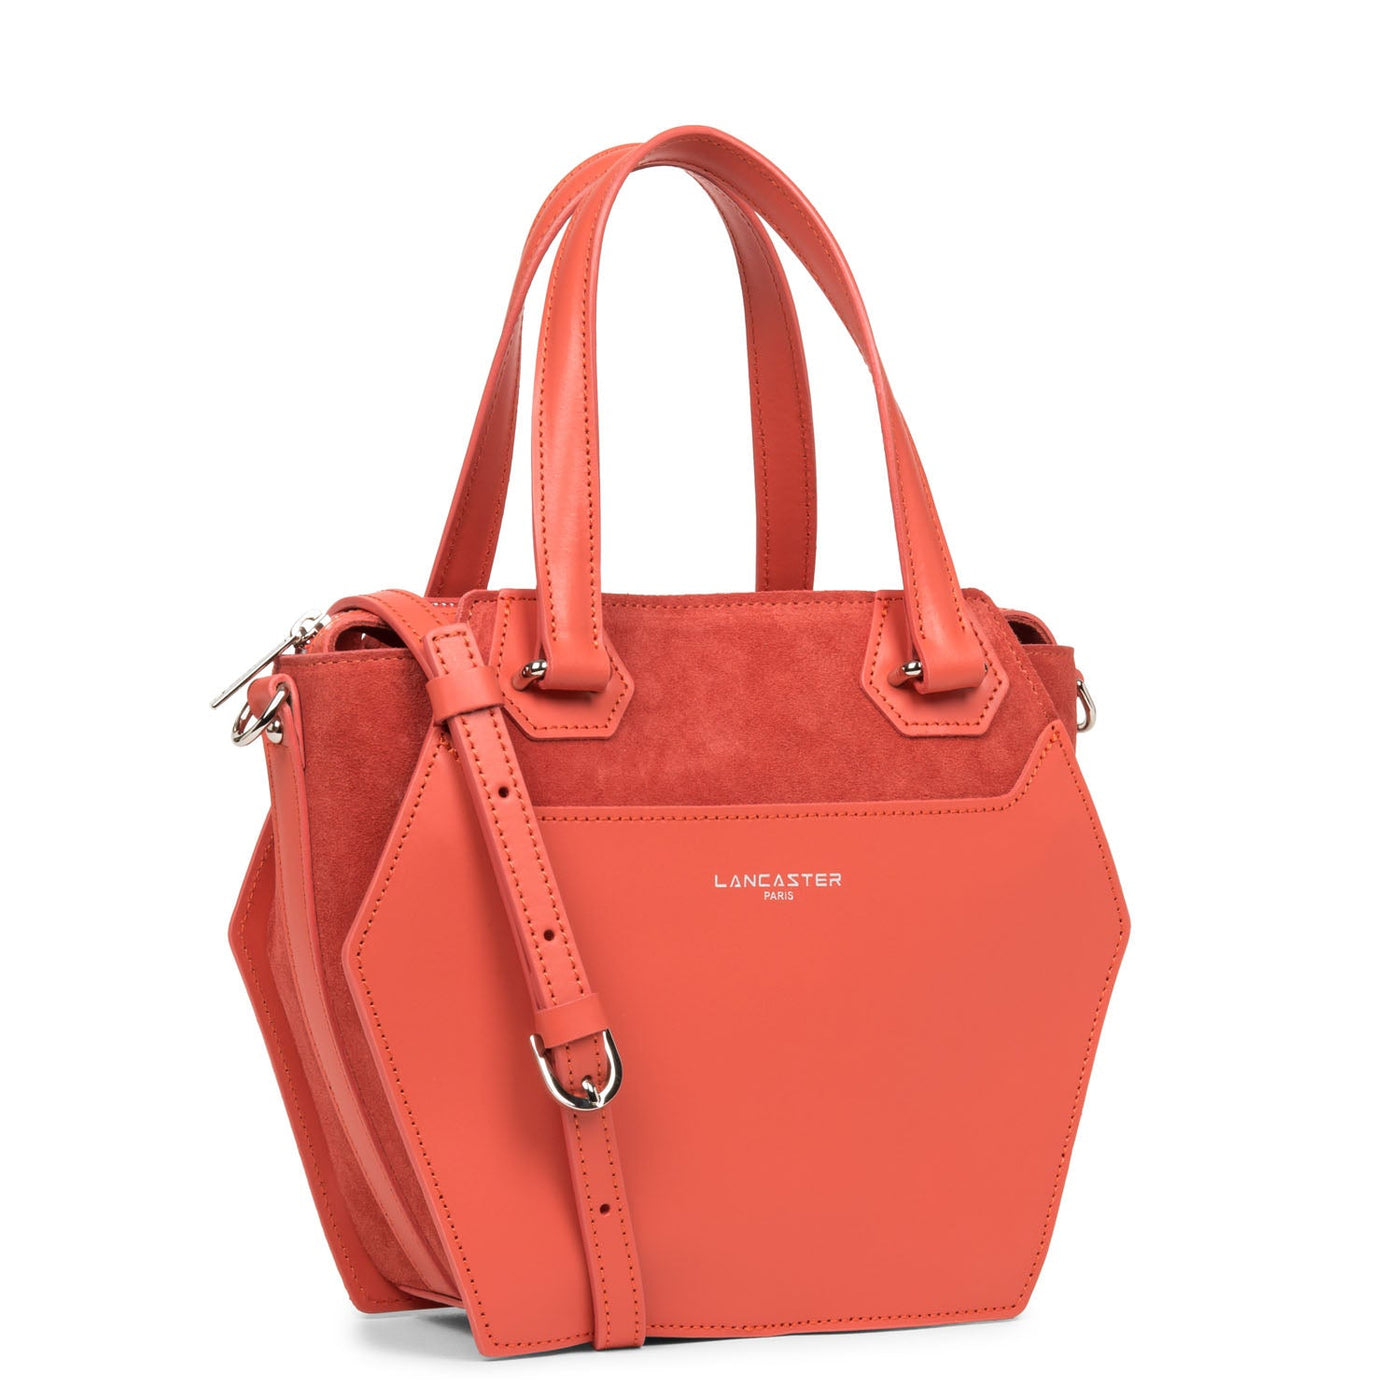 m handbag - smooth ruche #couleur_corail